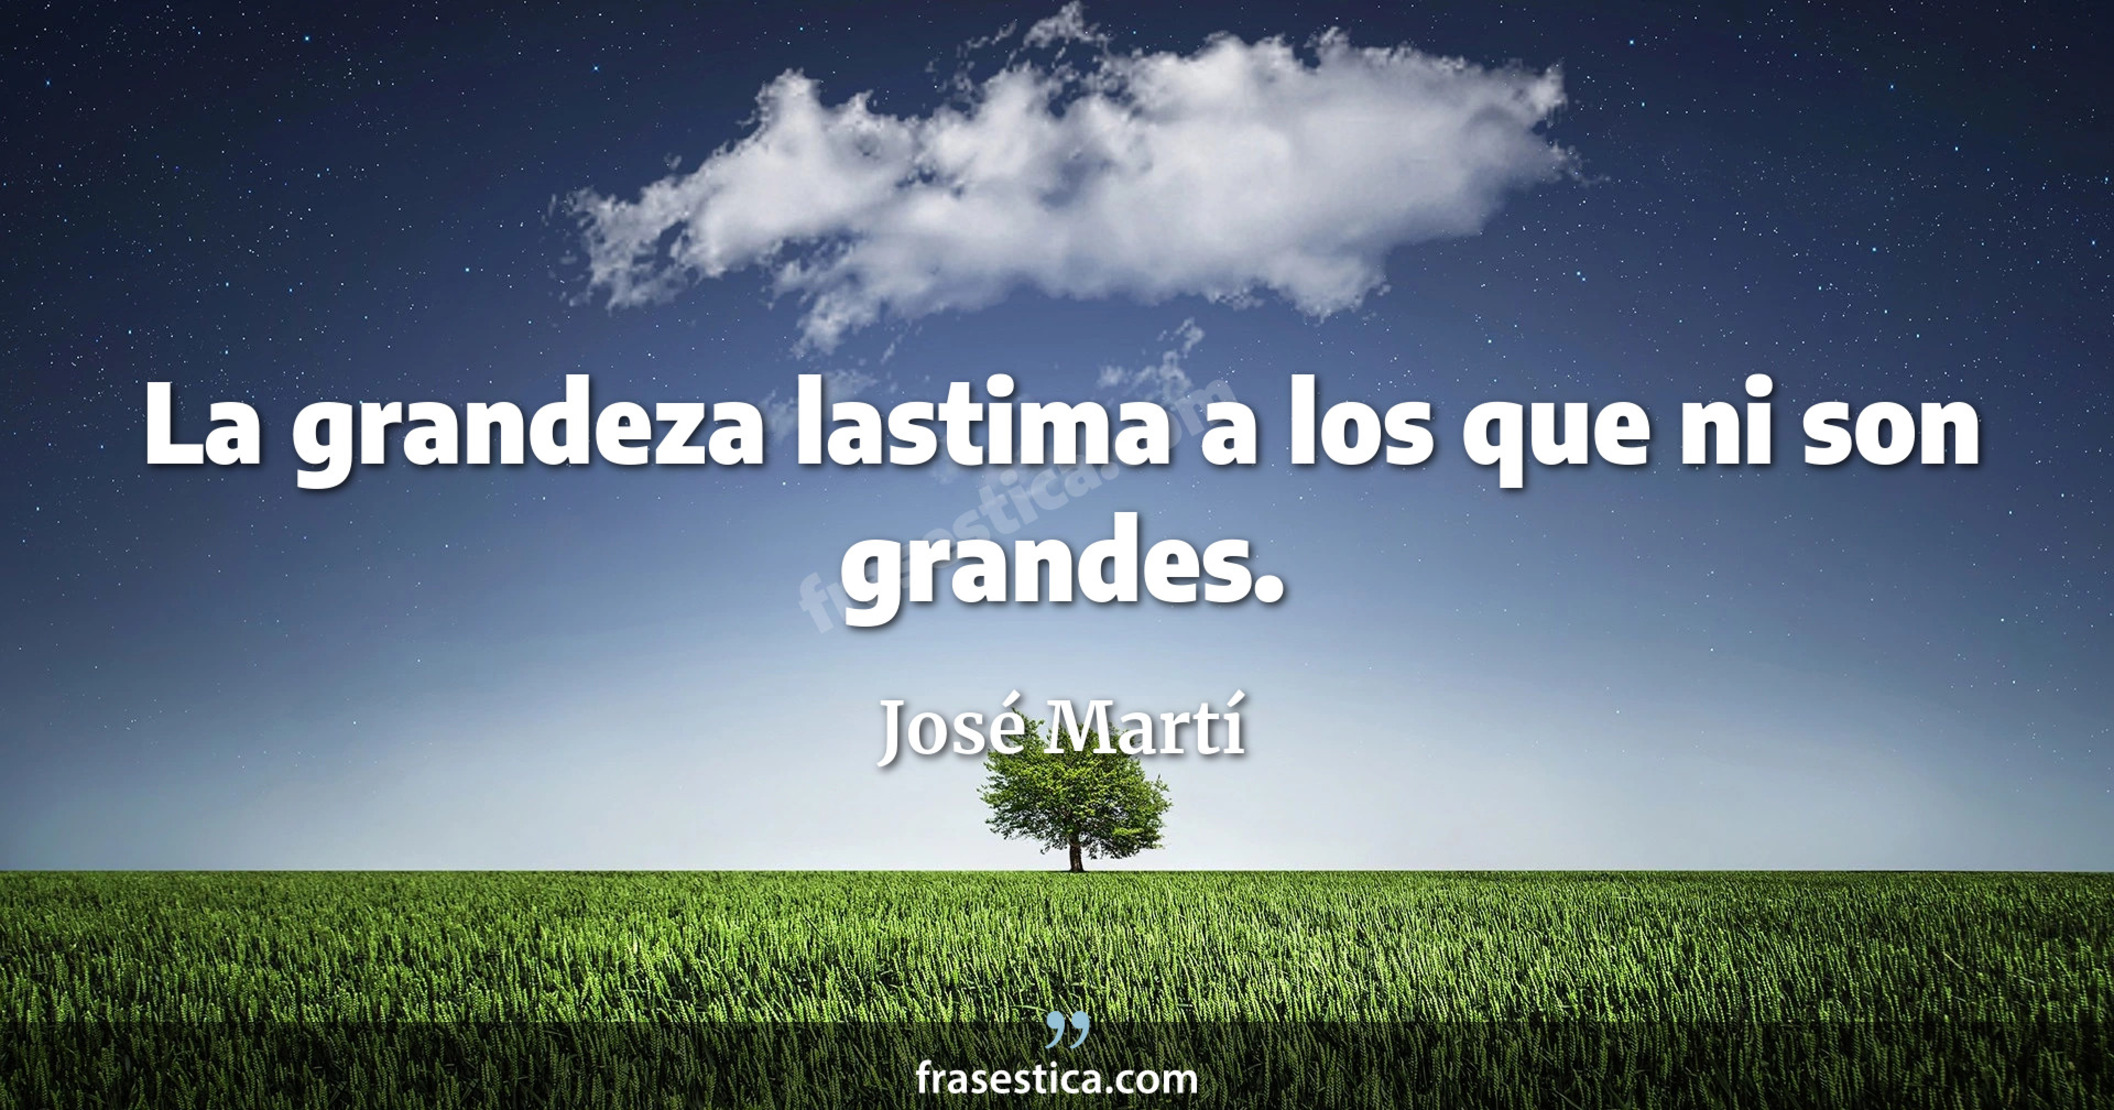 La grandeza lastima a los que ni son grandes. - José Martí